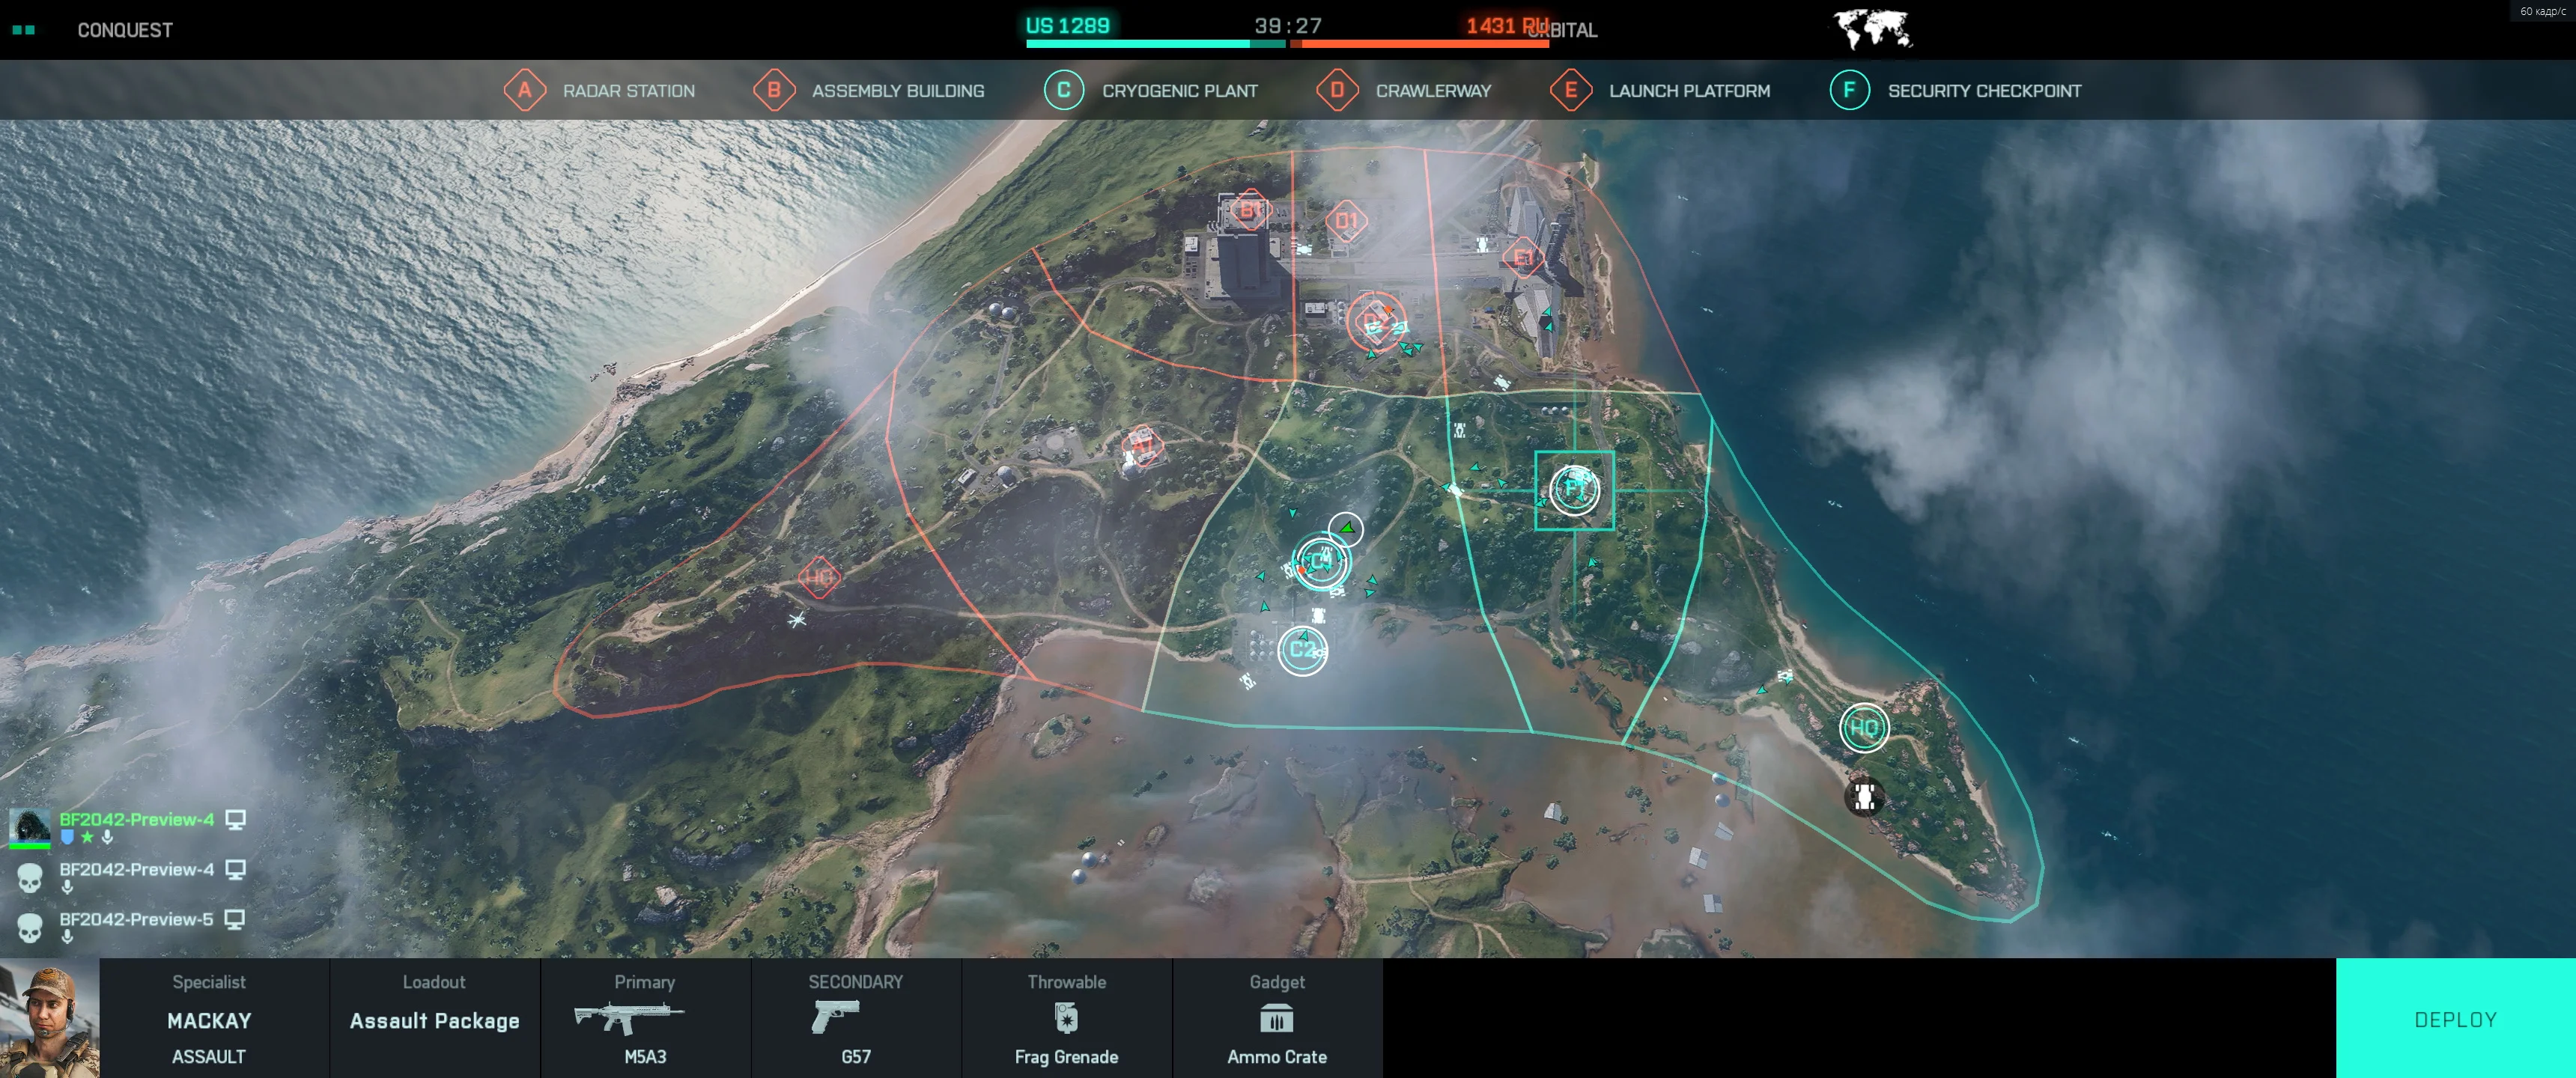 Впечатления от беты Battlefield 2042: огромная карта, зрелищность и схожесть с Battlefield 3 - фото 1